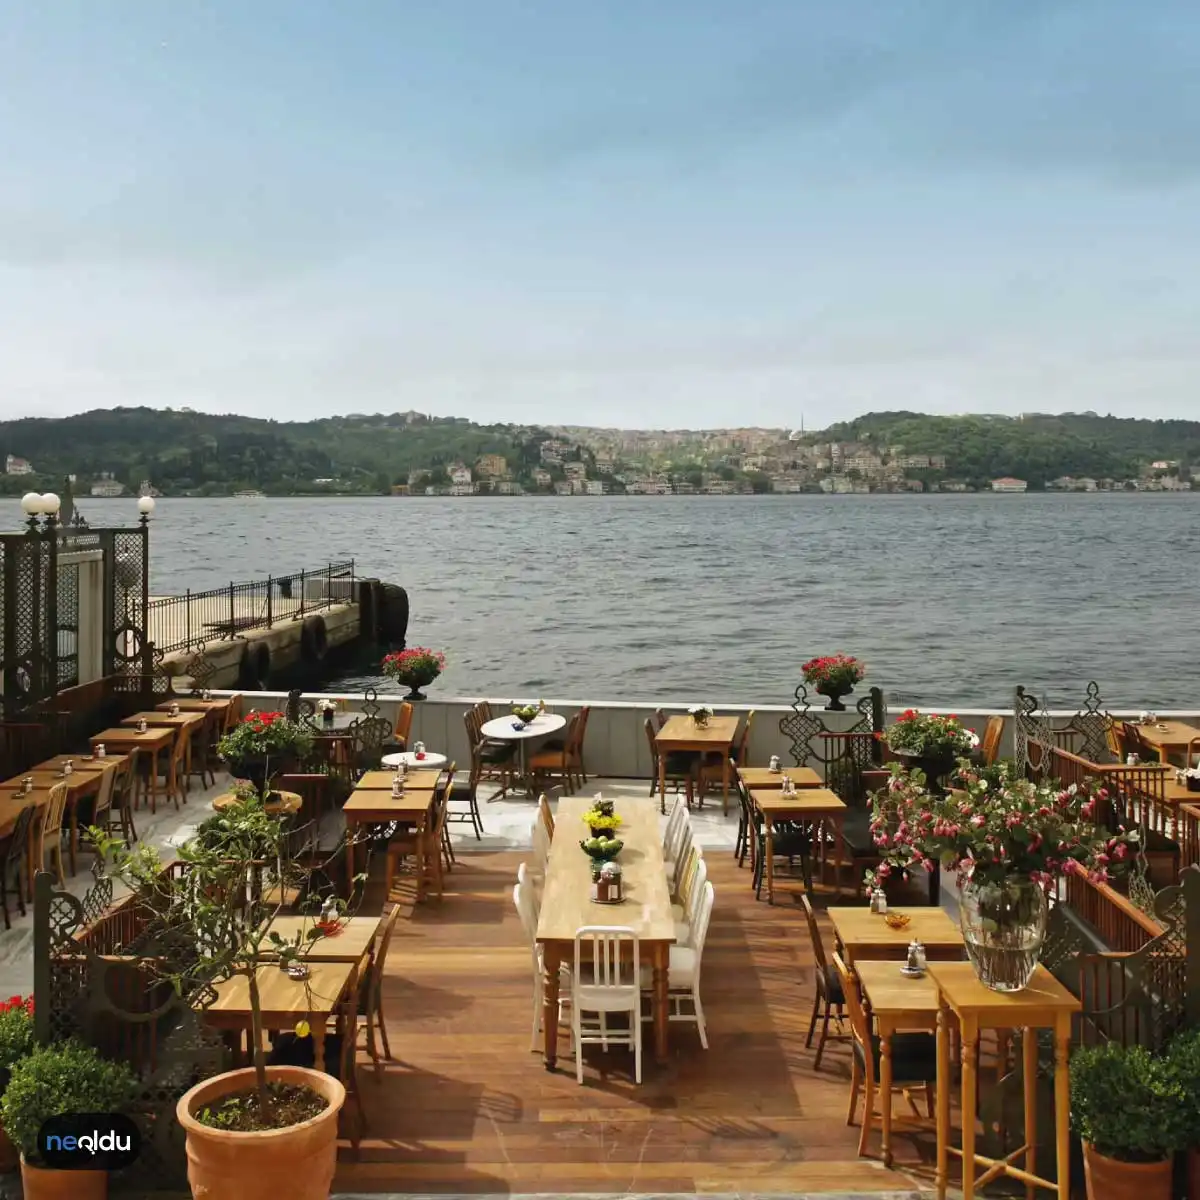 İstanbul'da Deniz Kenarında Yemek Yenilecek Mekanlar